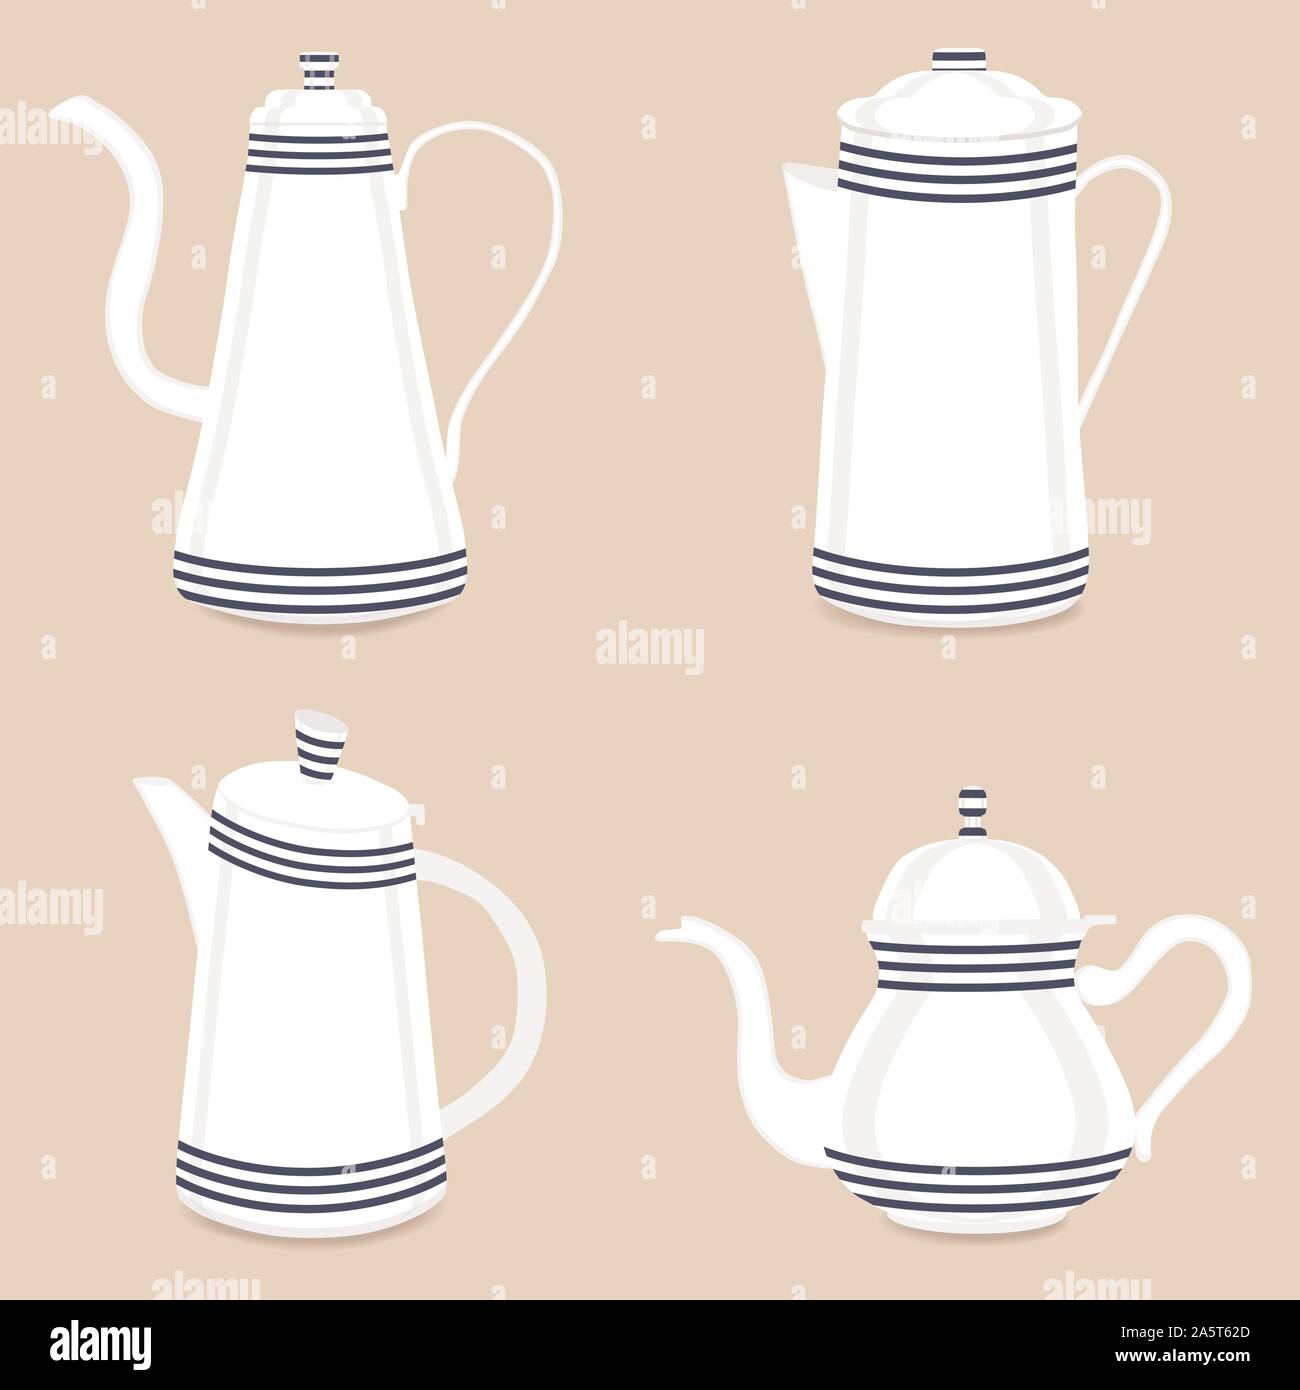 Abstract Vector Illustration logo für Keramik Teekanne, Wasserkocher für den Hintergrund. Teekanne Muster bestehend aus Glas Wasserkocher mit Griff, Deckel, für Dra Auslauf Stock Vektor